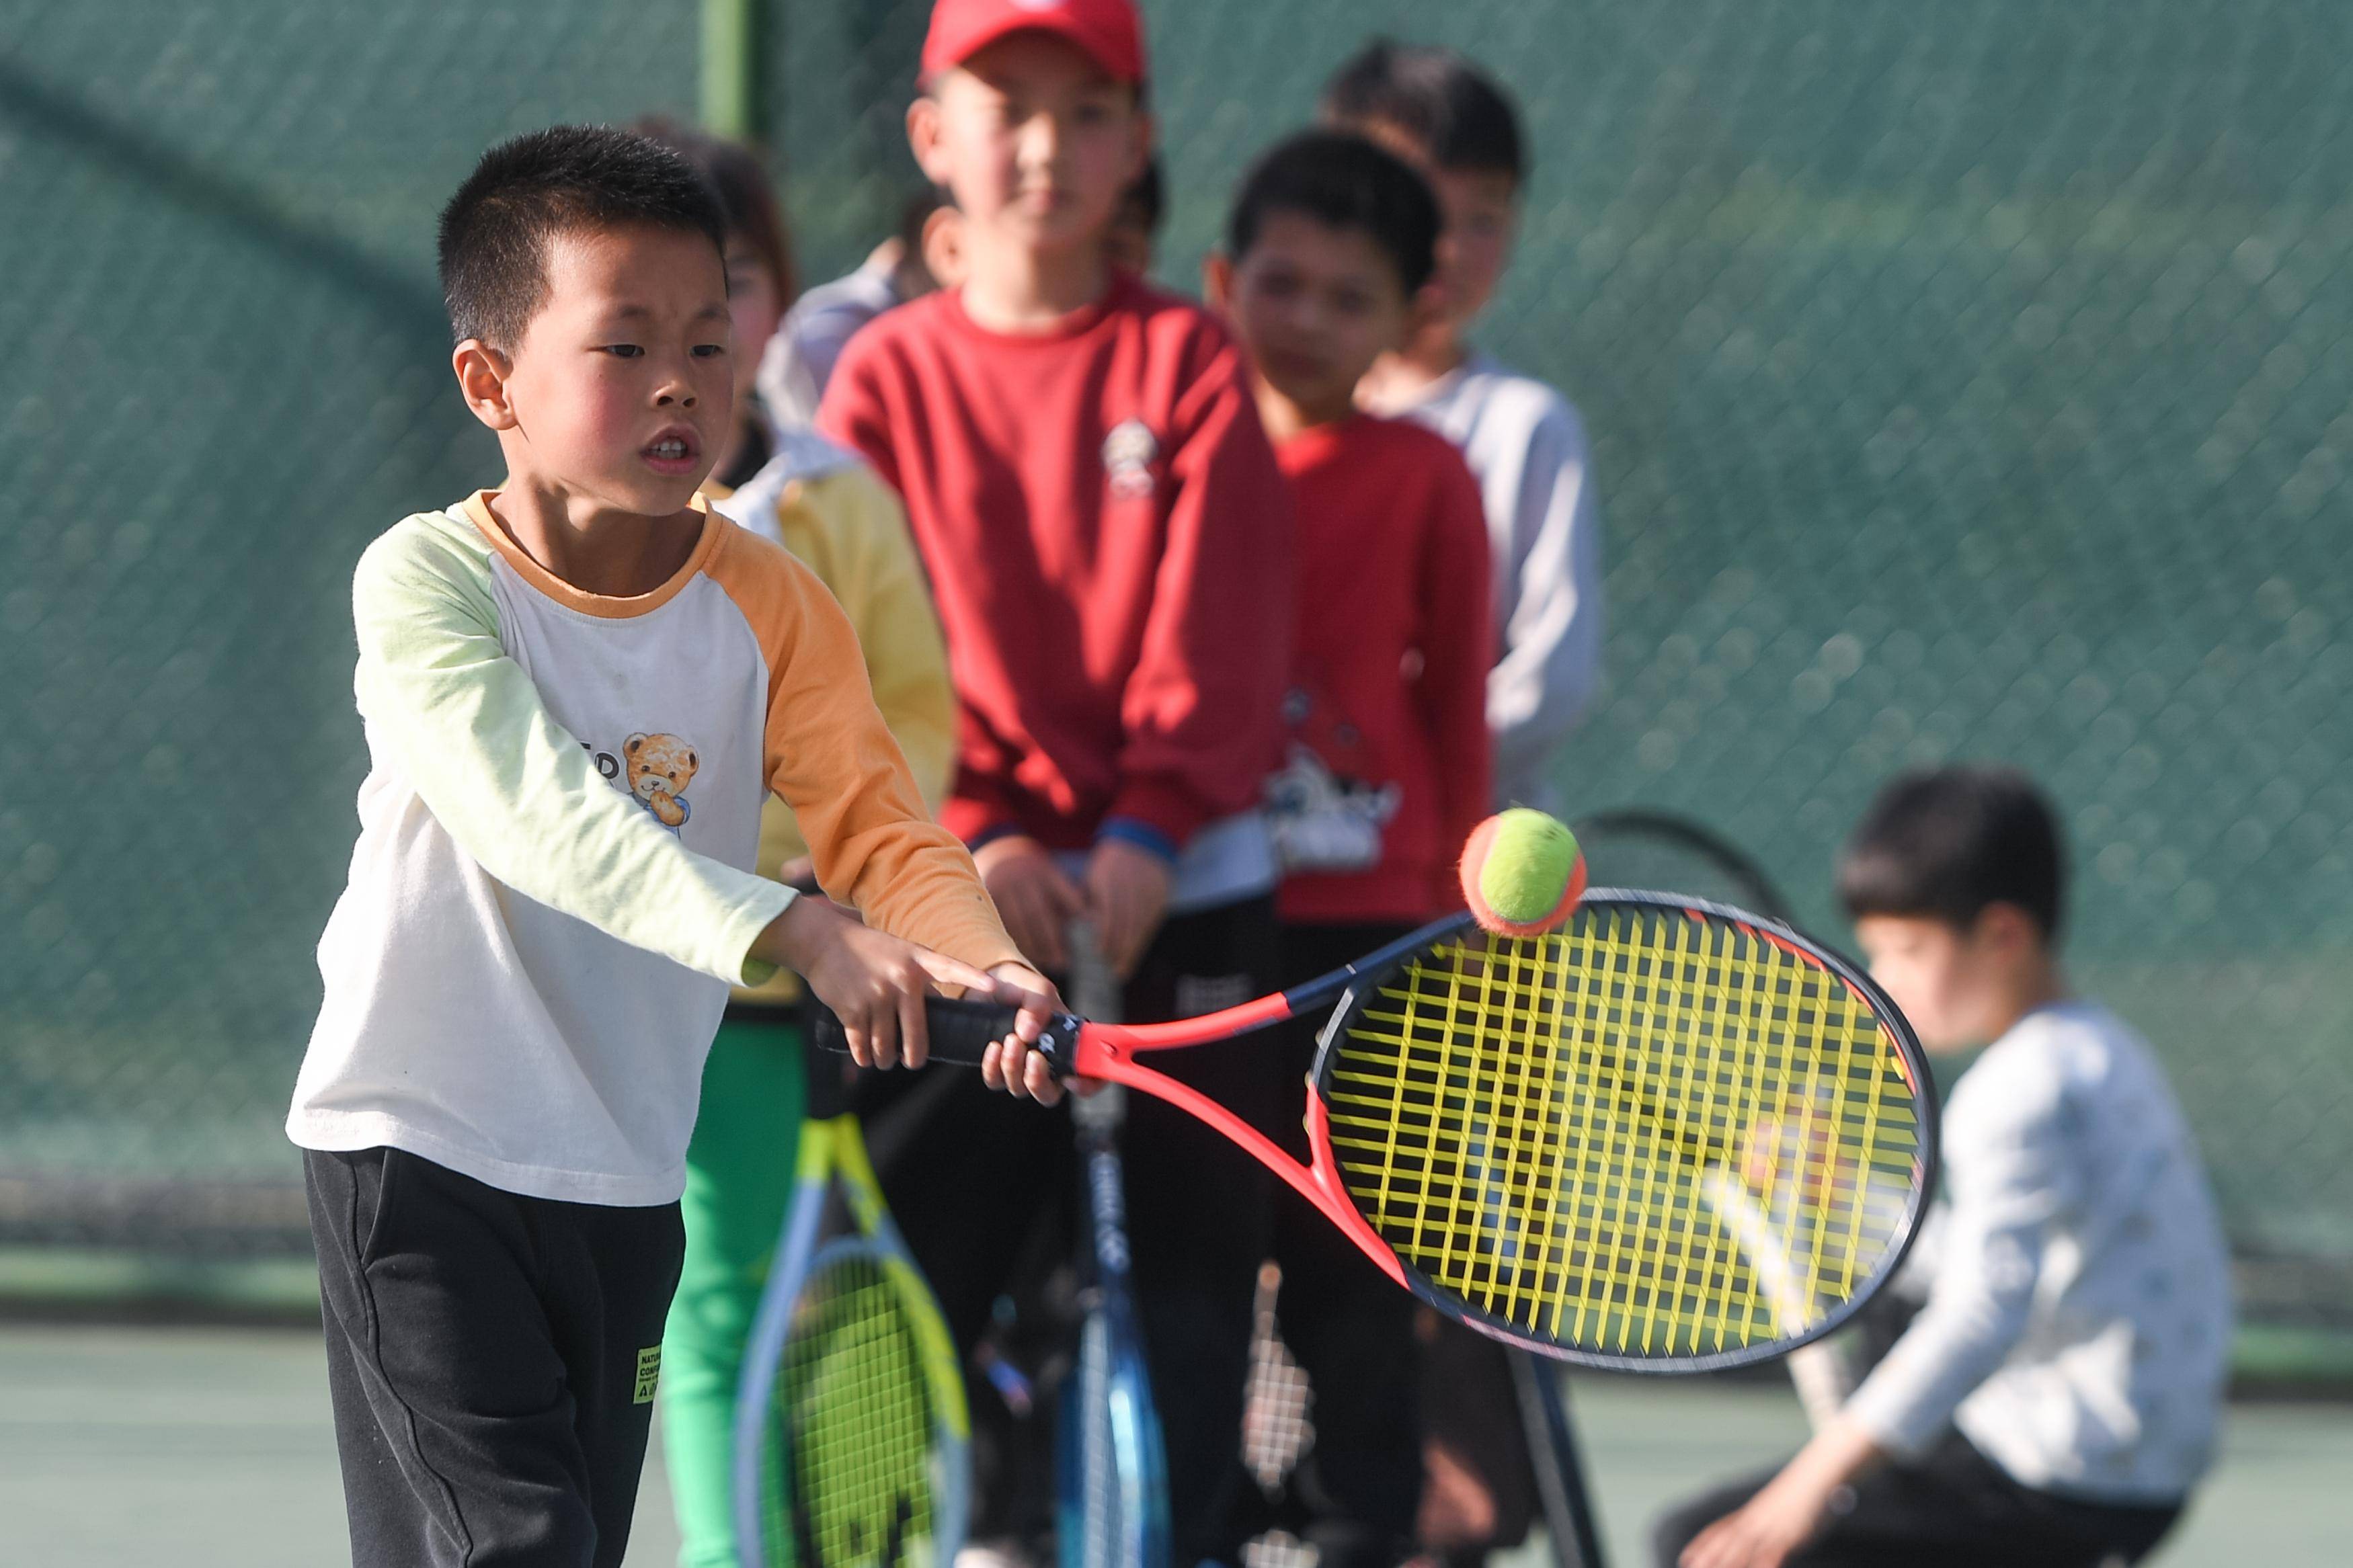 【168sports】图片故事丨网球学校“育苗”记